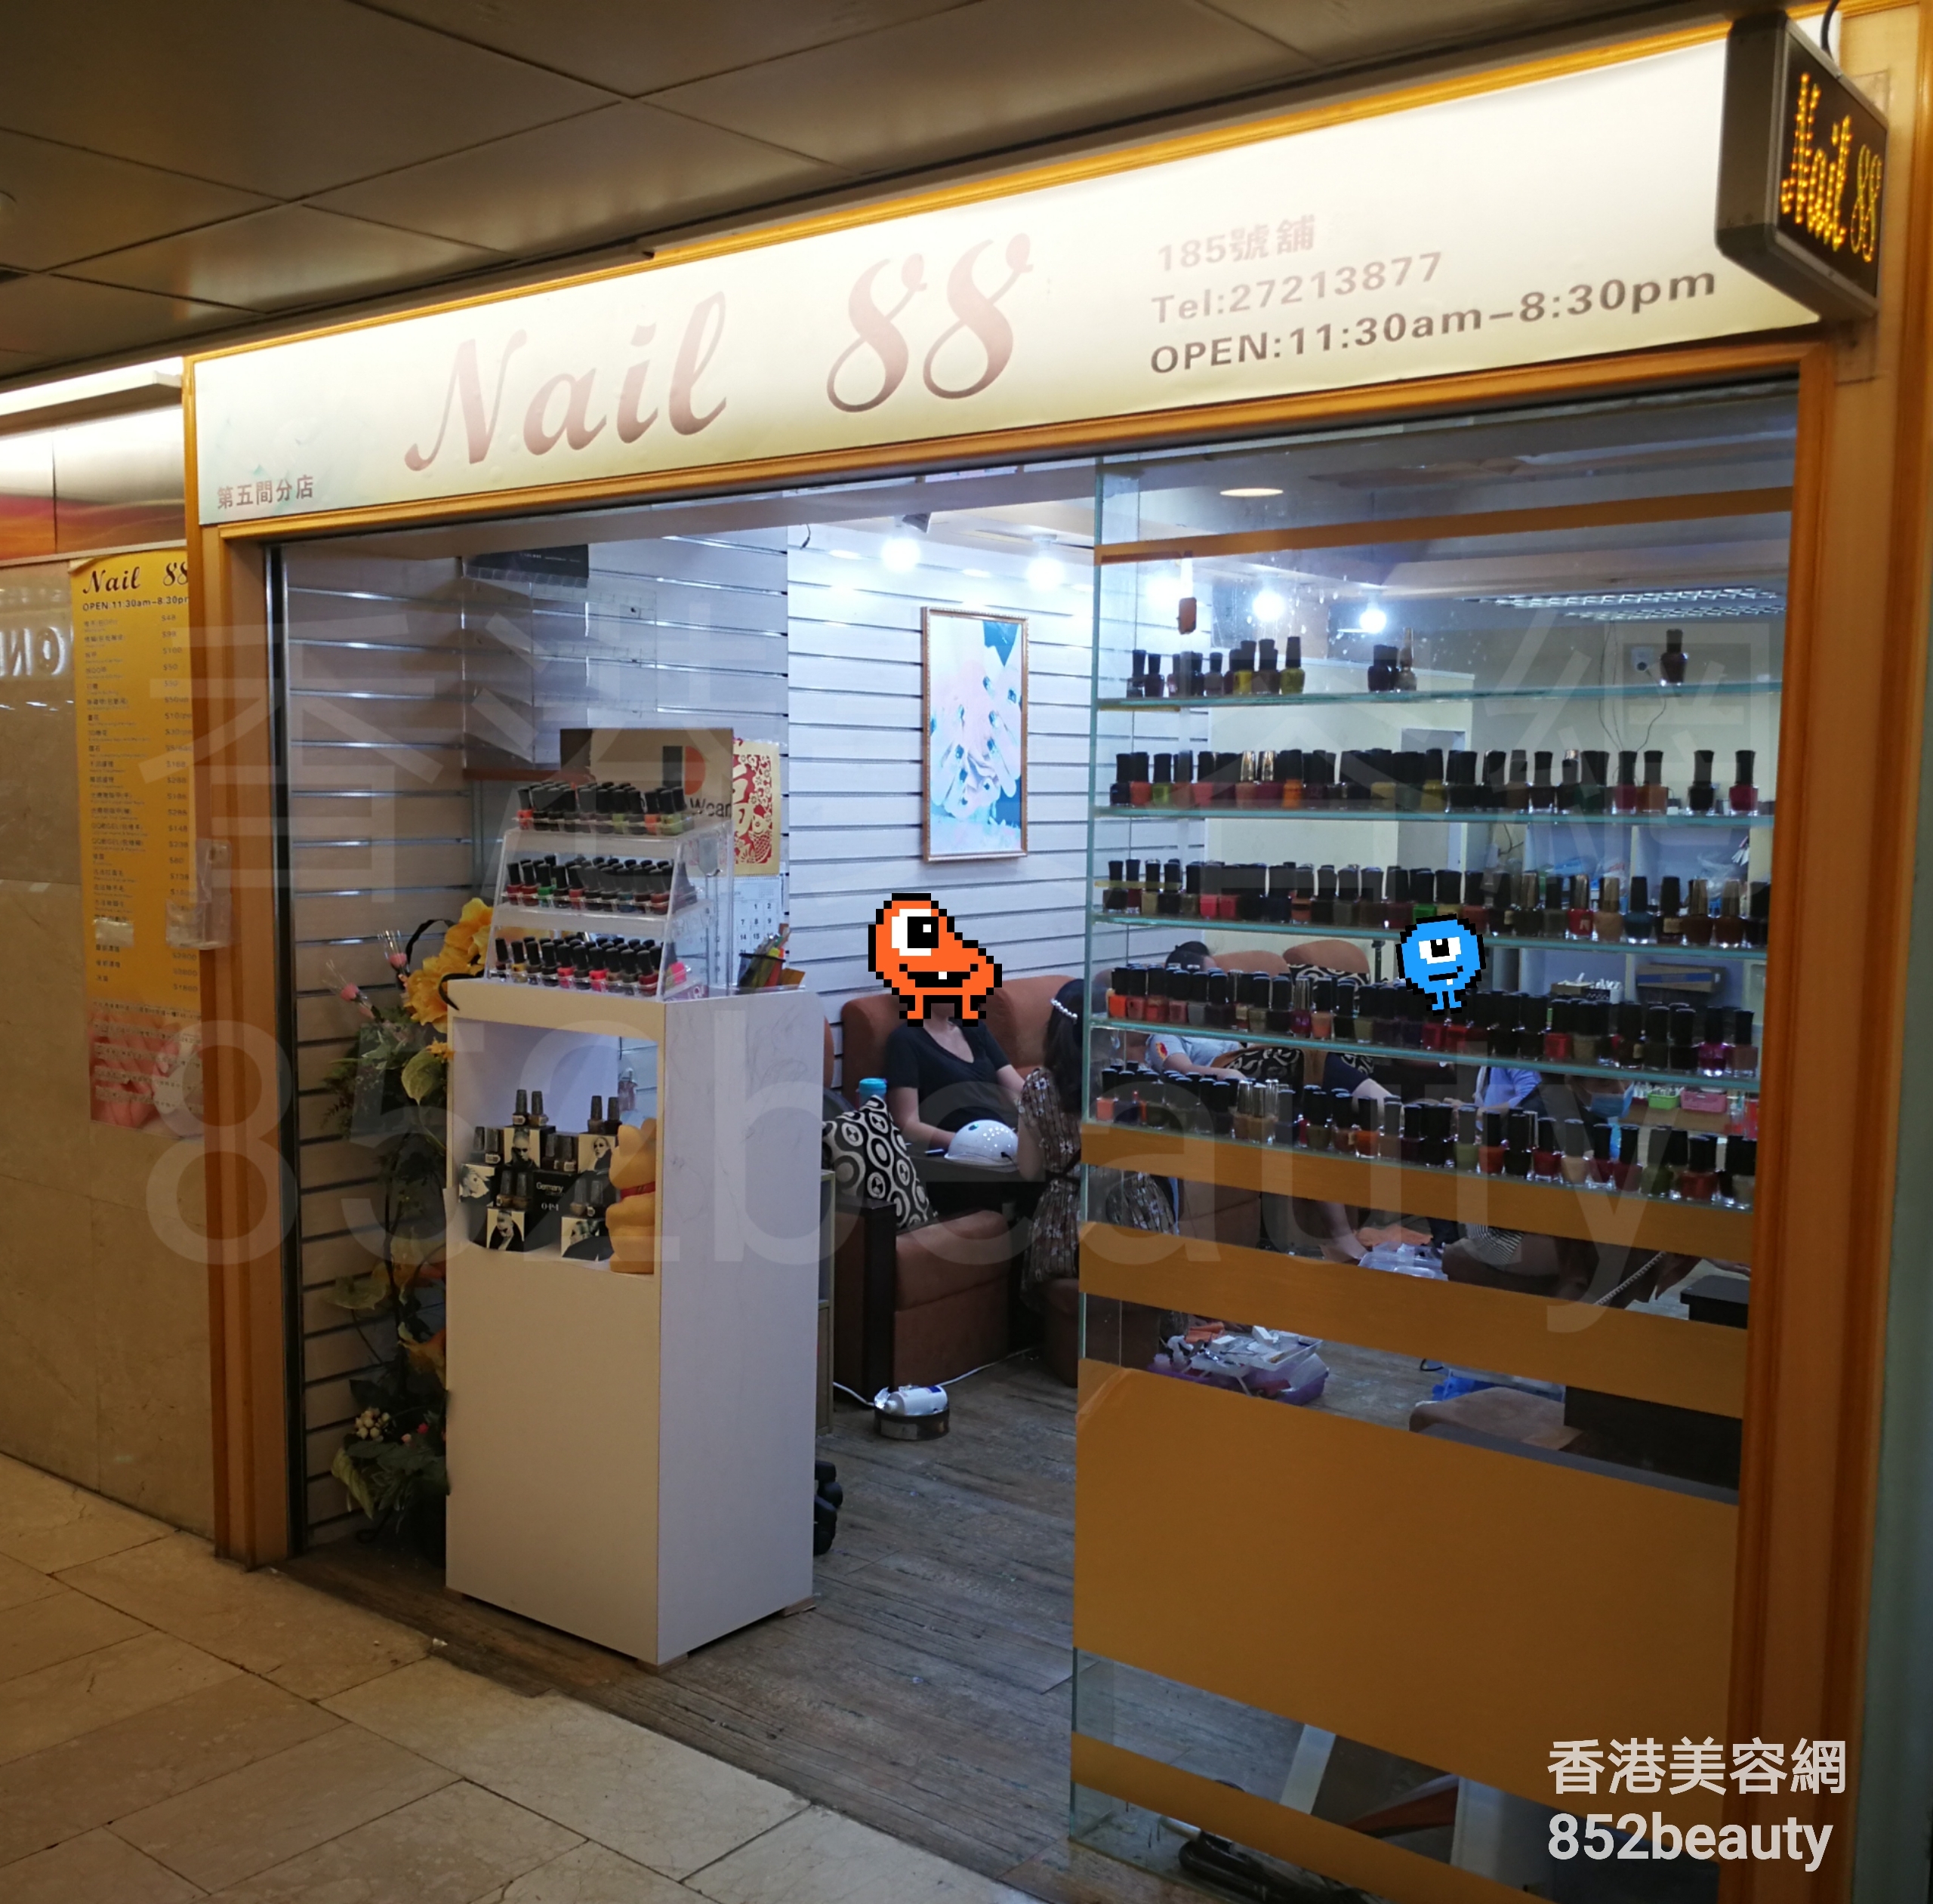 美容院 Beauty Salon: Nail 88 (尖沙咀店)